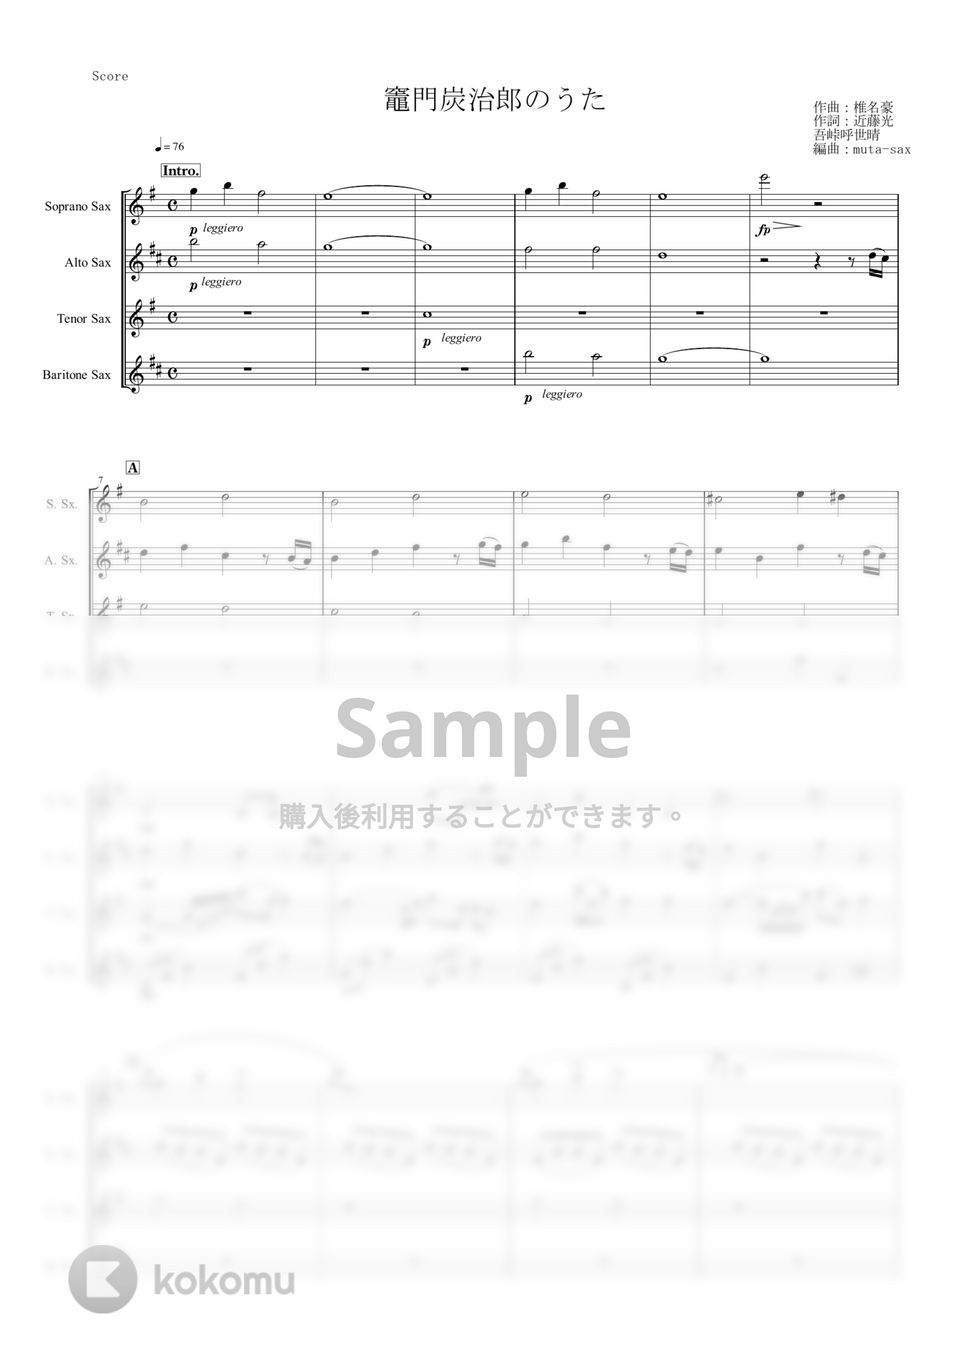 椎名豪 featuring 中川奈美 - 竈門炭治郎のうた (『鬼滅の刃』/サックス四重奏) by muta-sax